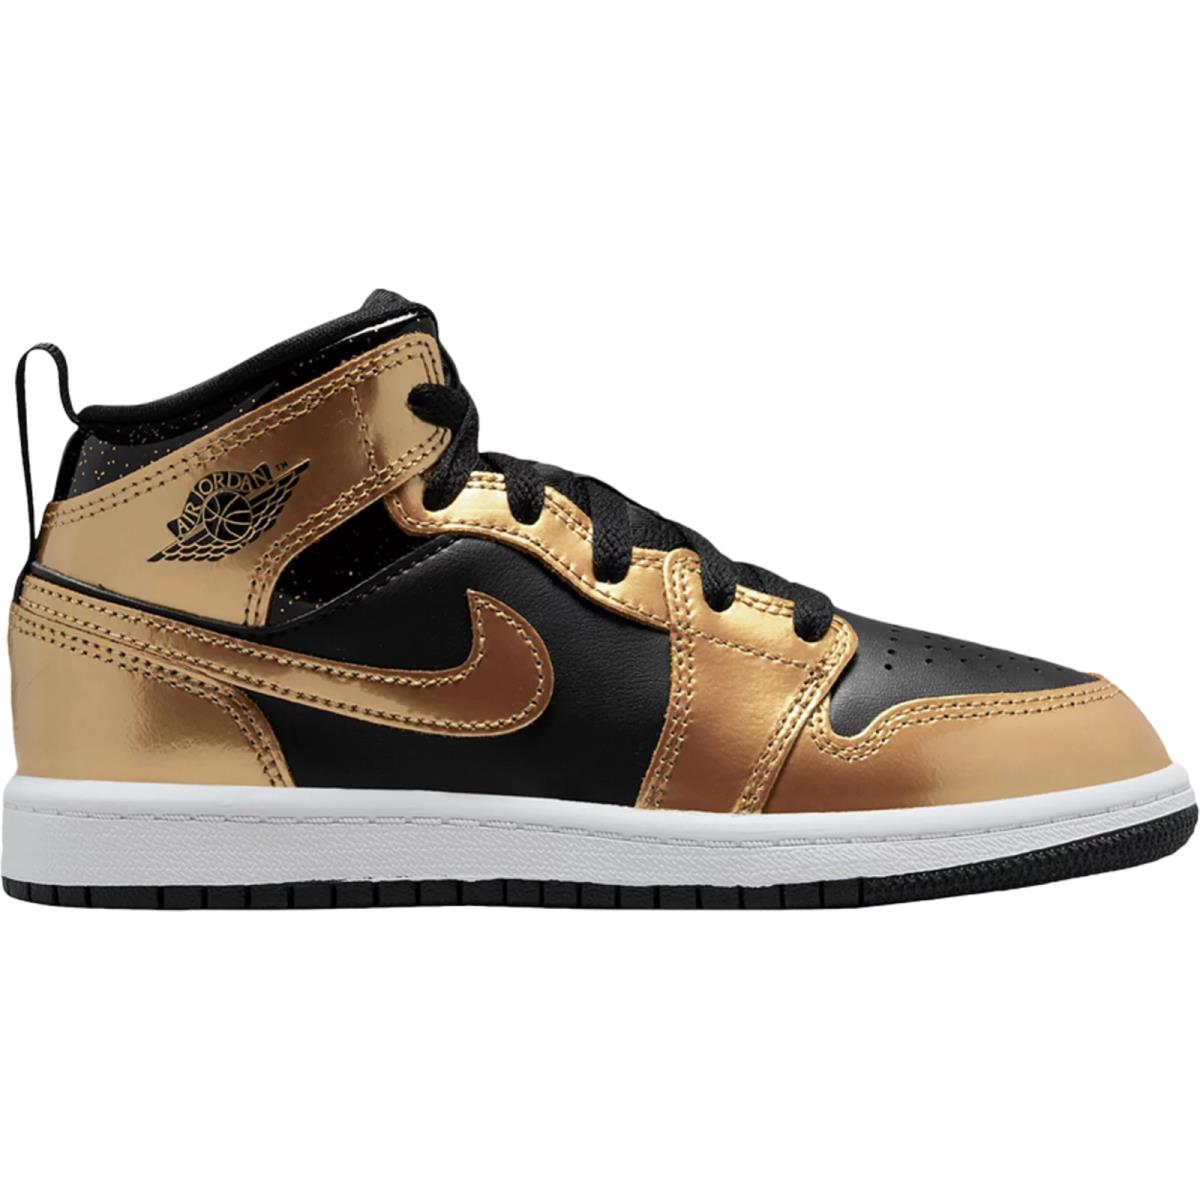 Nike Air Jordan 1 Mid PS Metallic Gold Black Sneakers Shoes DR6968-071 13C